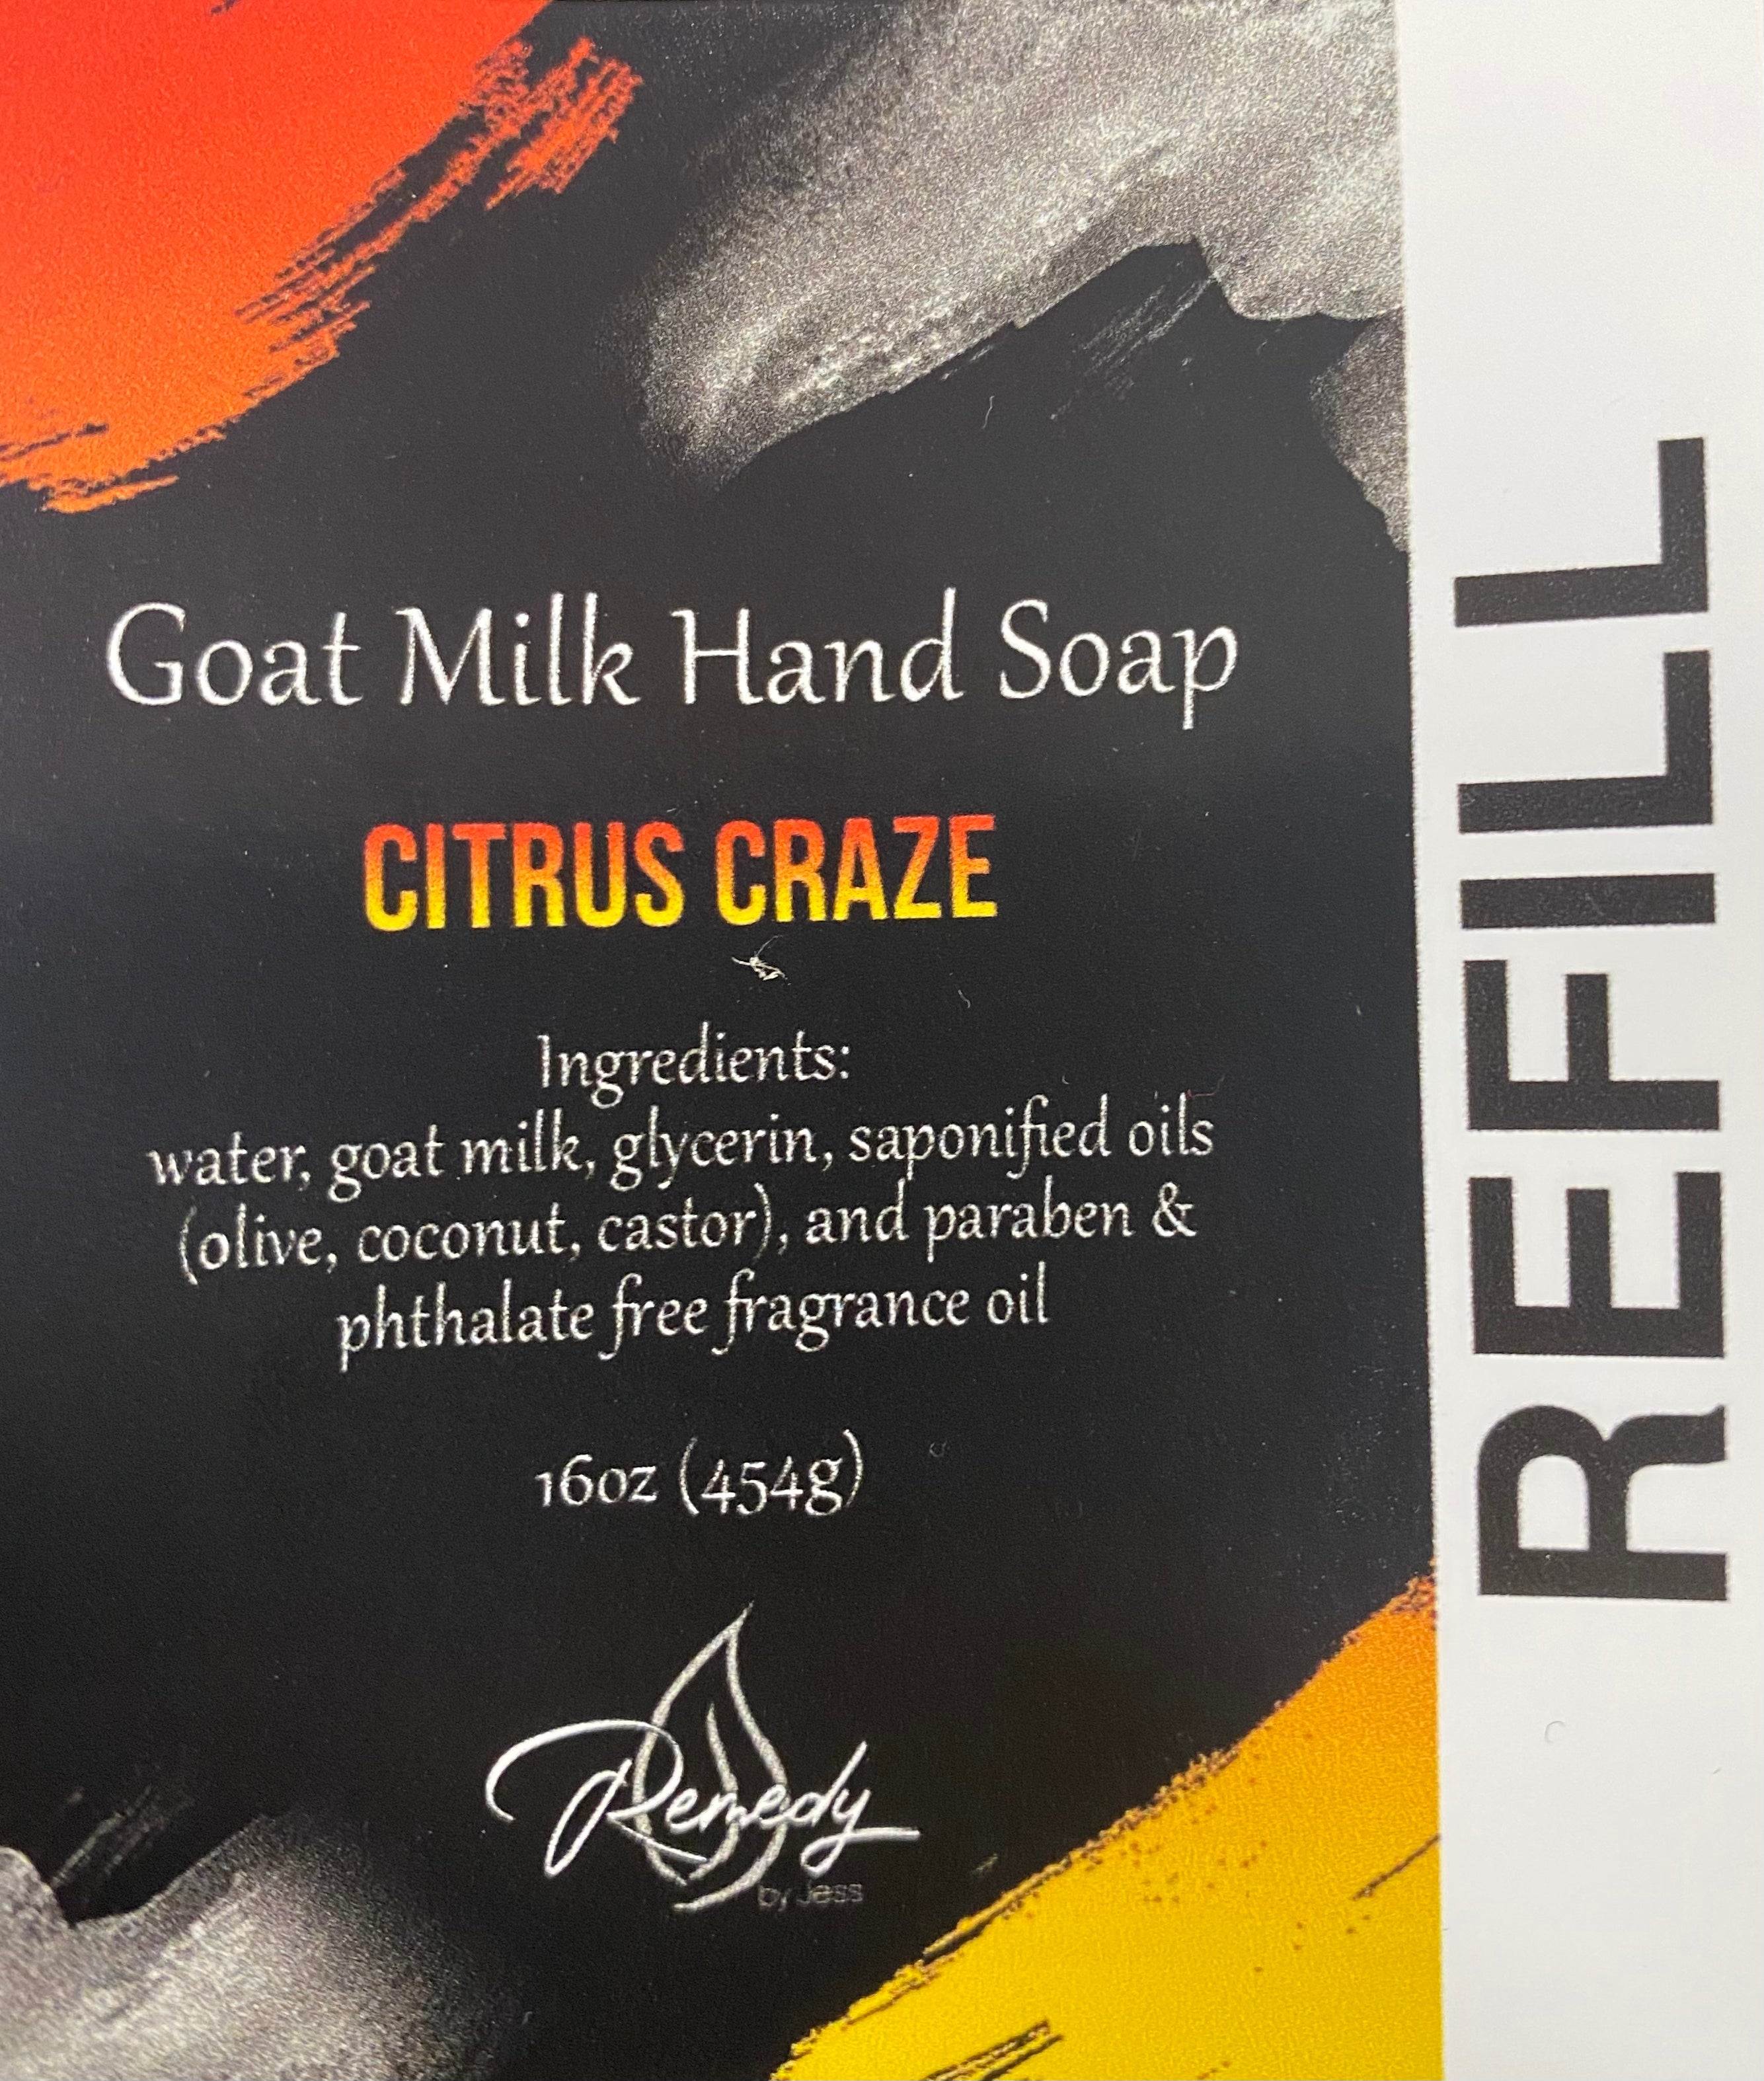 Citrus Craze Goat Milk Hand Soap Refill